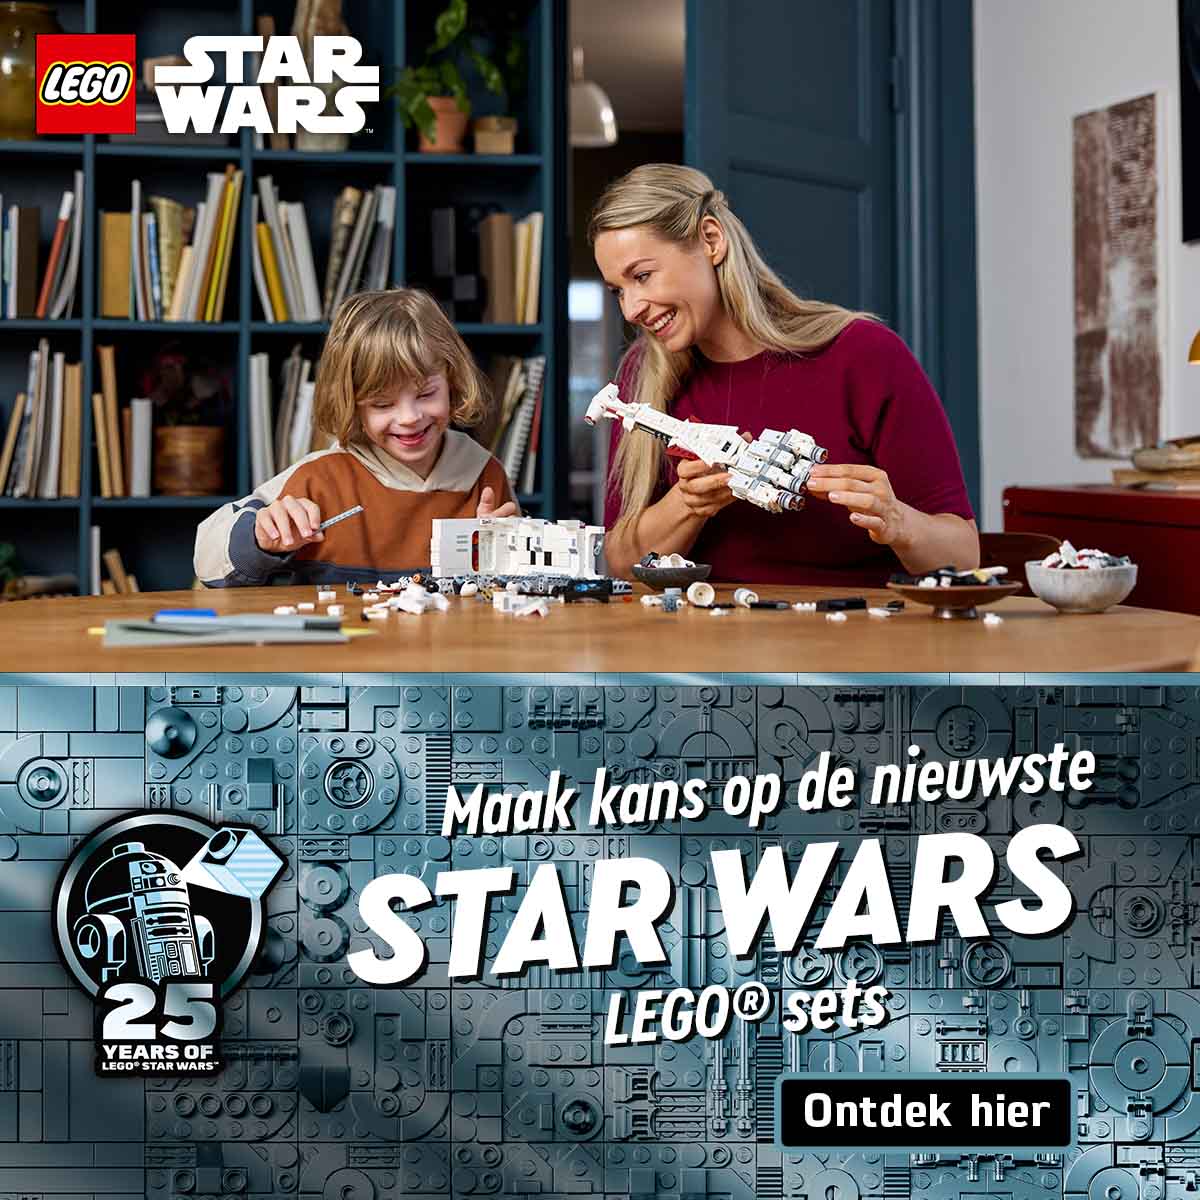 LEGO Star Wars actie van Goodbricks